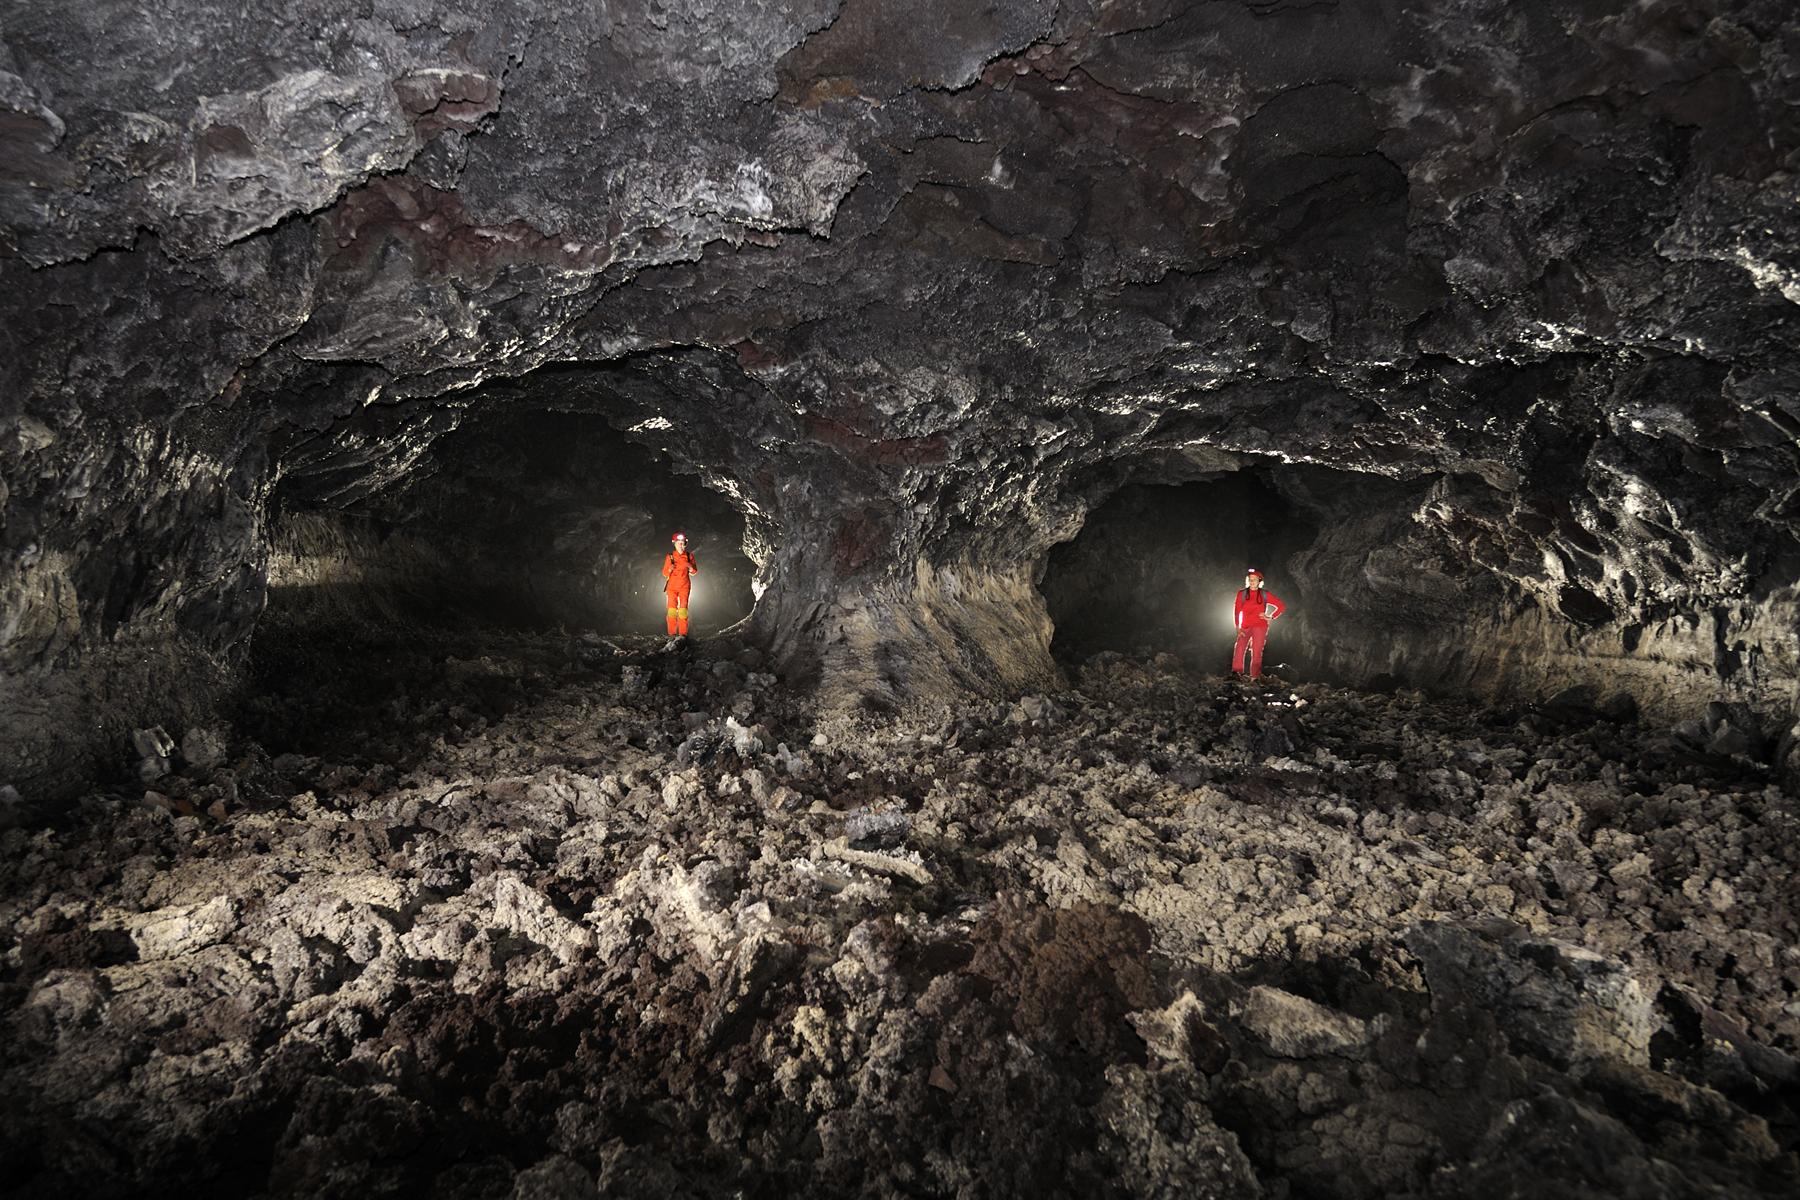 Hawaï (USA) - Tube de lave - Kula Kaï - Galerie double correspondant à la confluence de deux coulées de lave